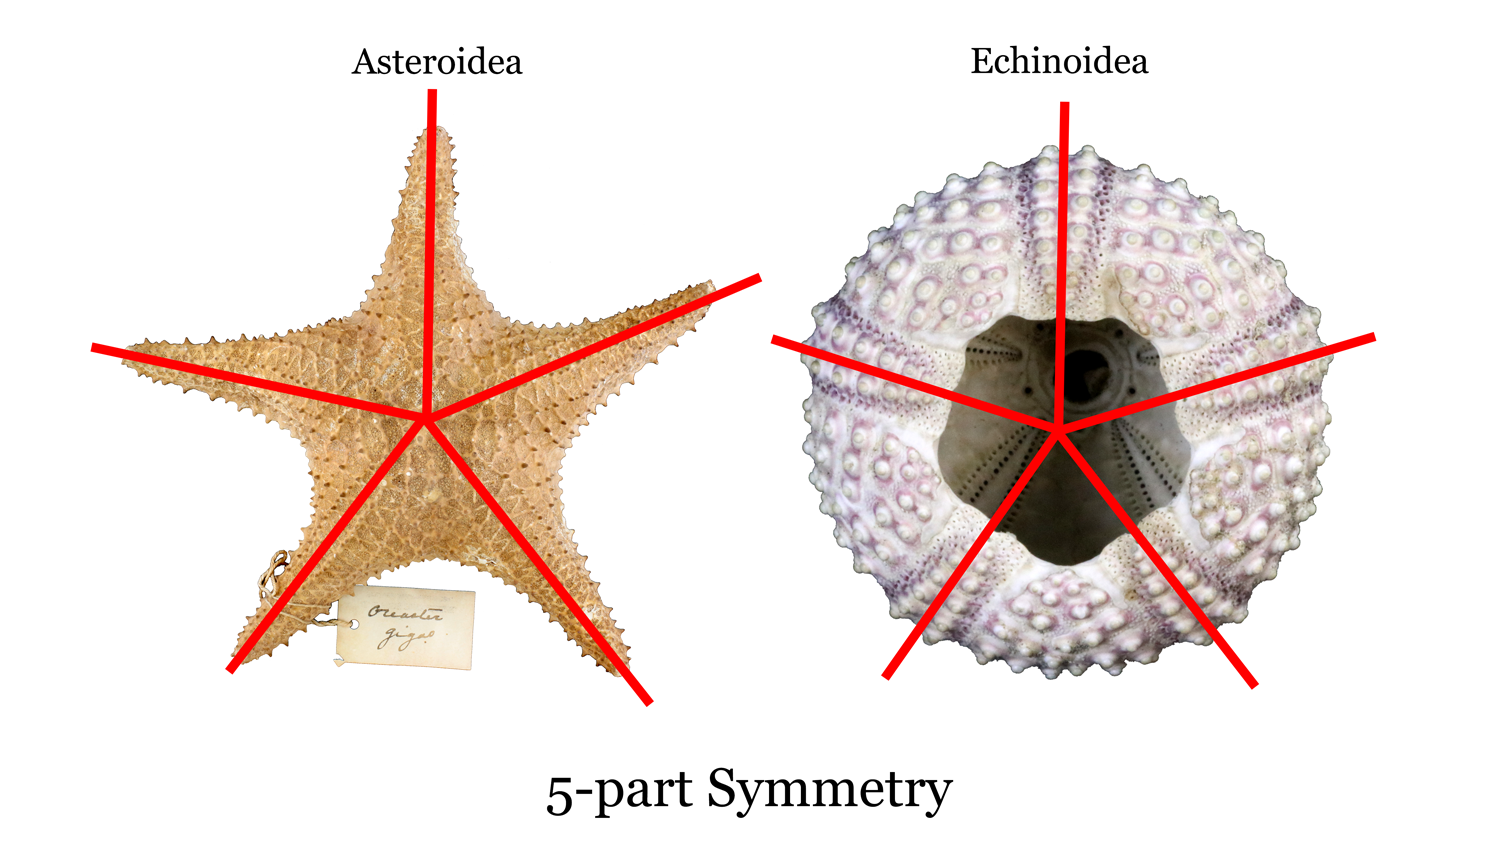 examples of phylum echinodermata